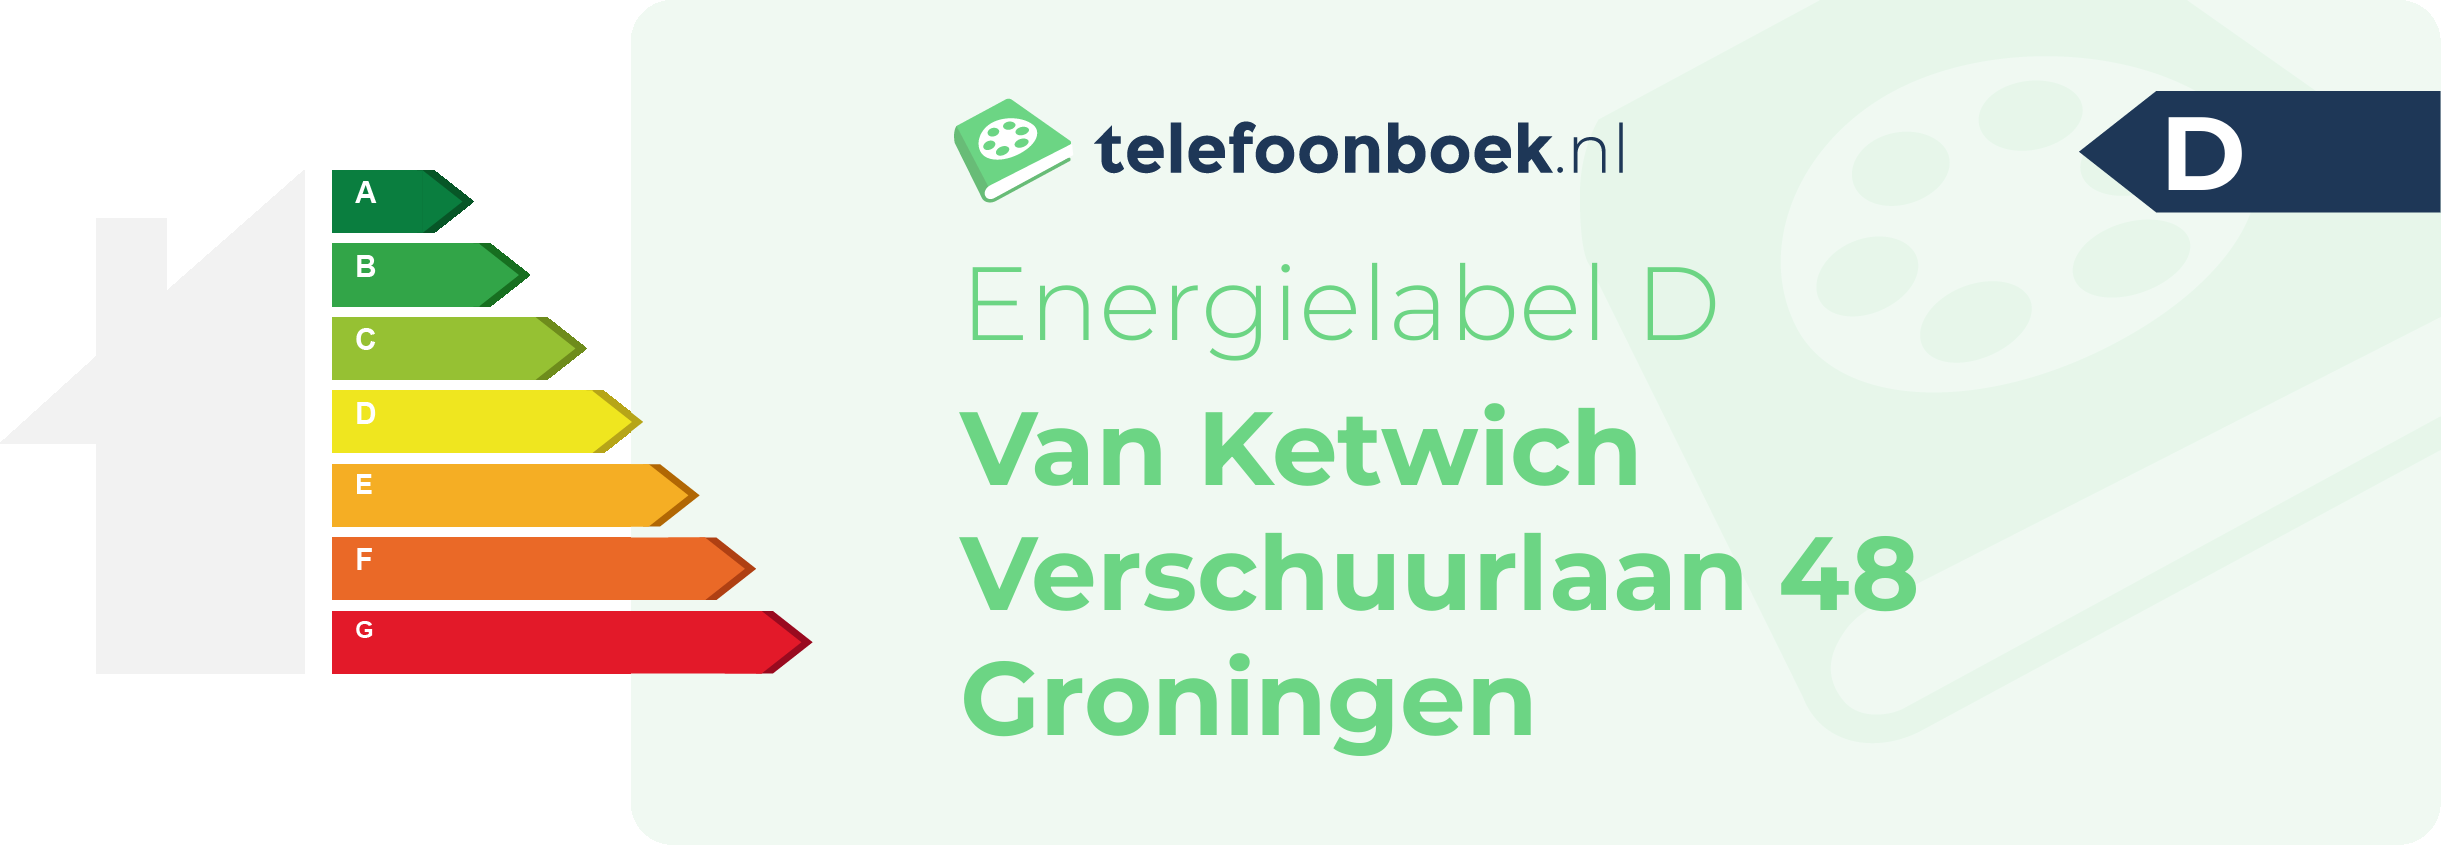 Energielabel Van Ketwich Verschuurlaan 48 Groningen